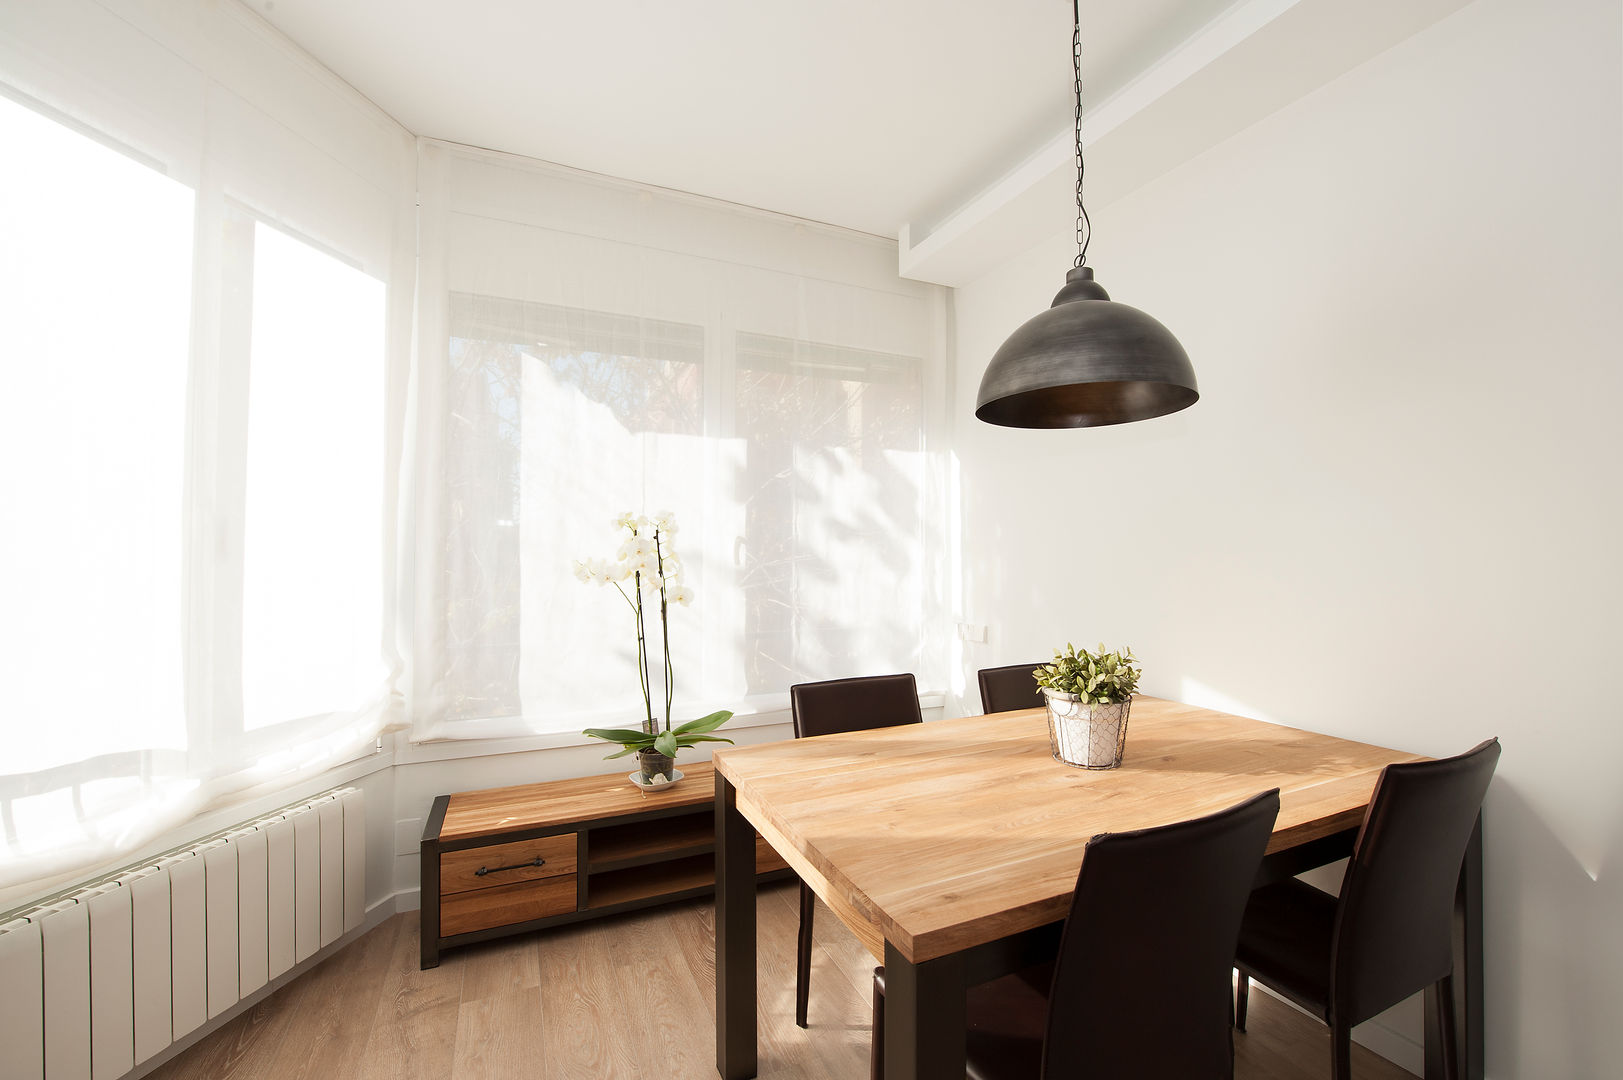 Comedor con mobiliario de estilo nórdico y rústico Sincro Comedores escandinavos